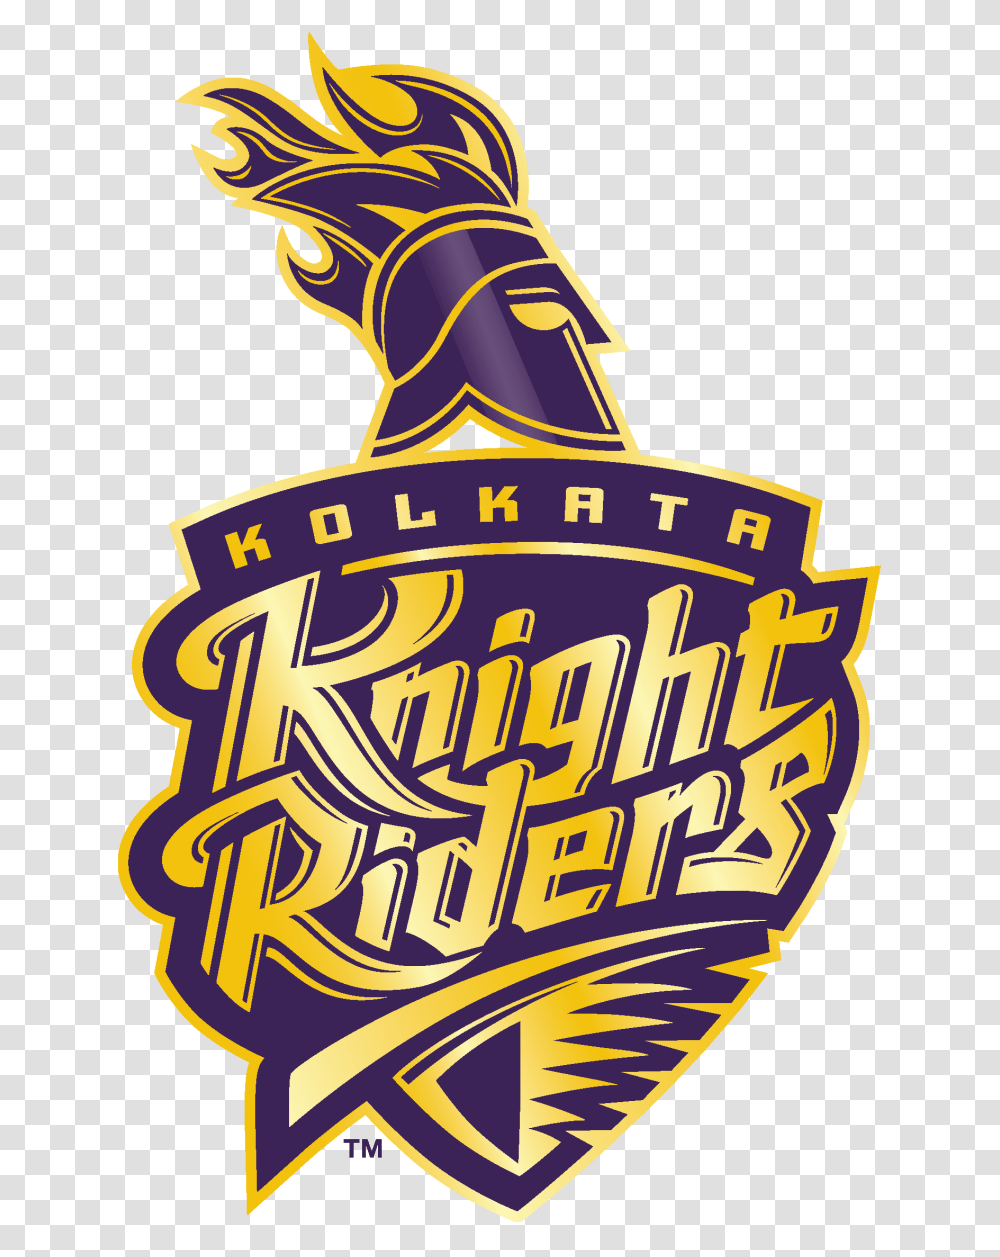 Kolkata Knight Riders Logo Image Free Download Kolkata Knight Riders Ipl, Animal, Beverage Transparent Png